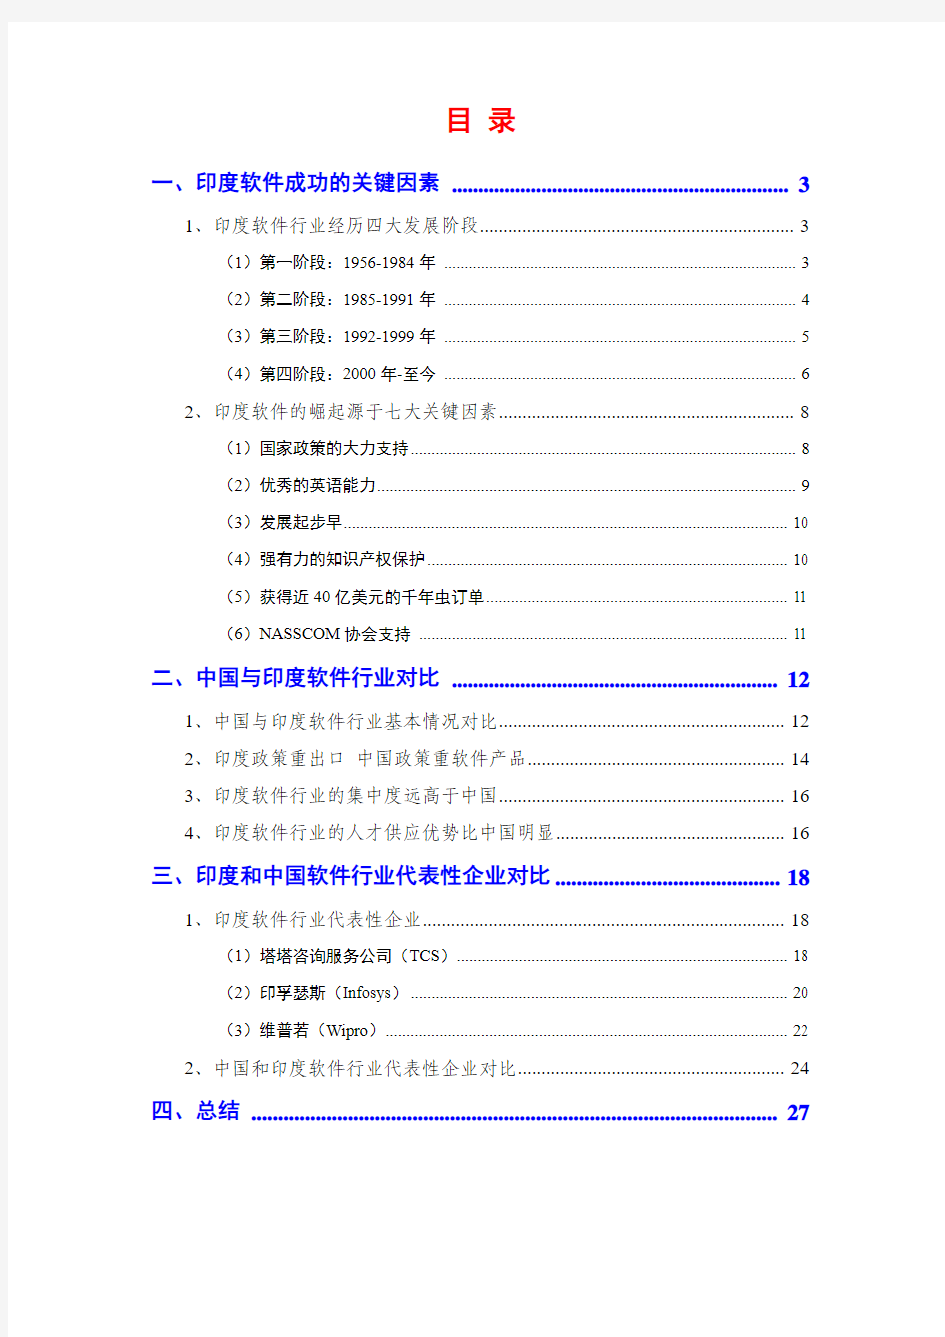 中国和印度软件行业分析报告2012